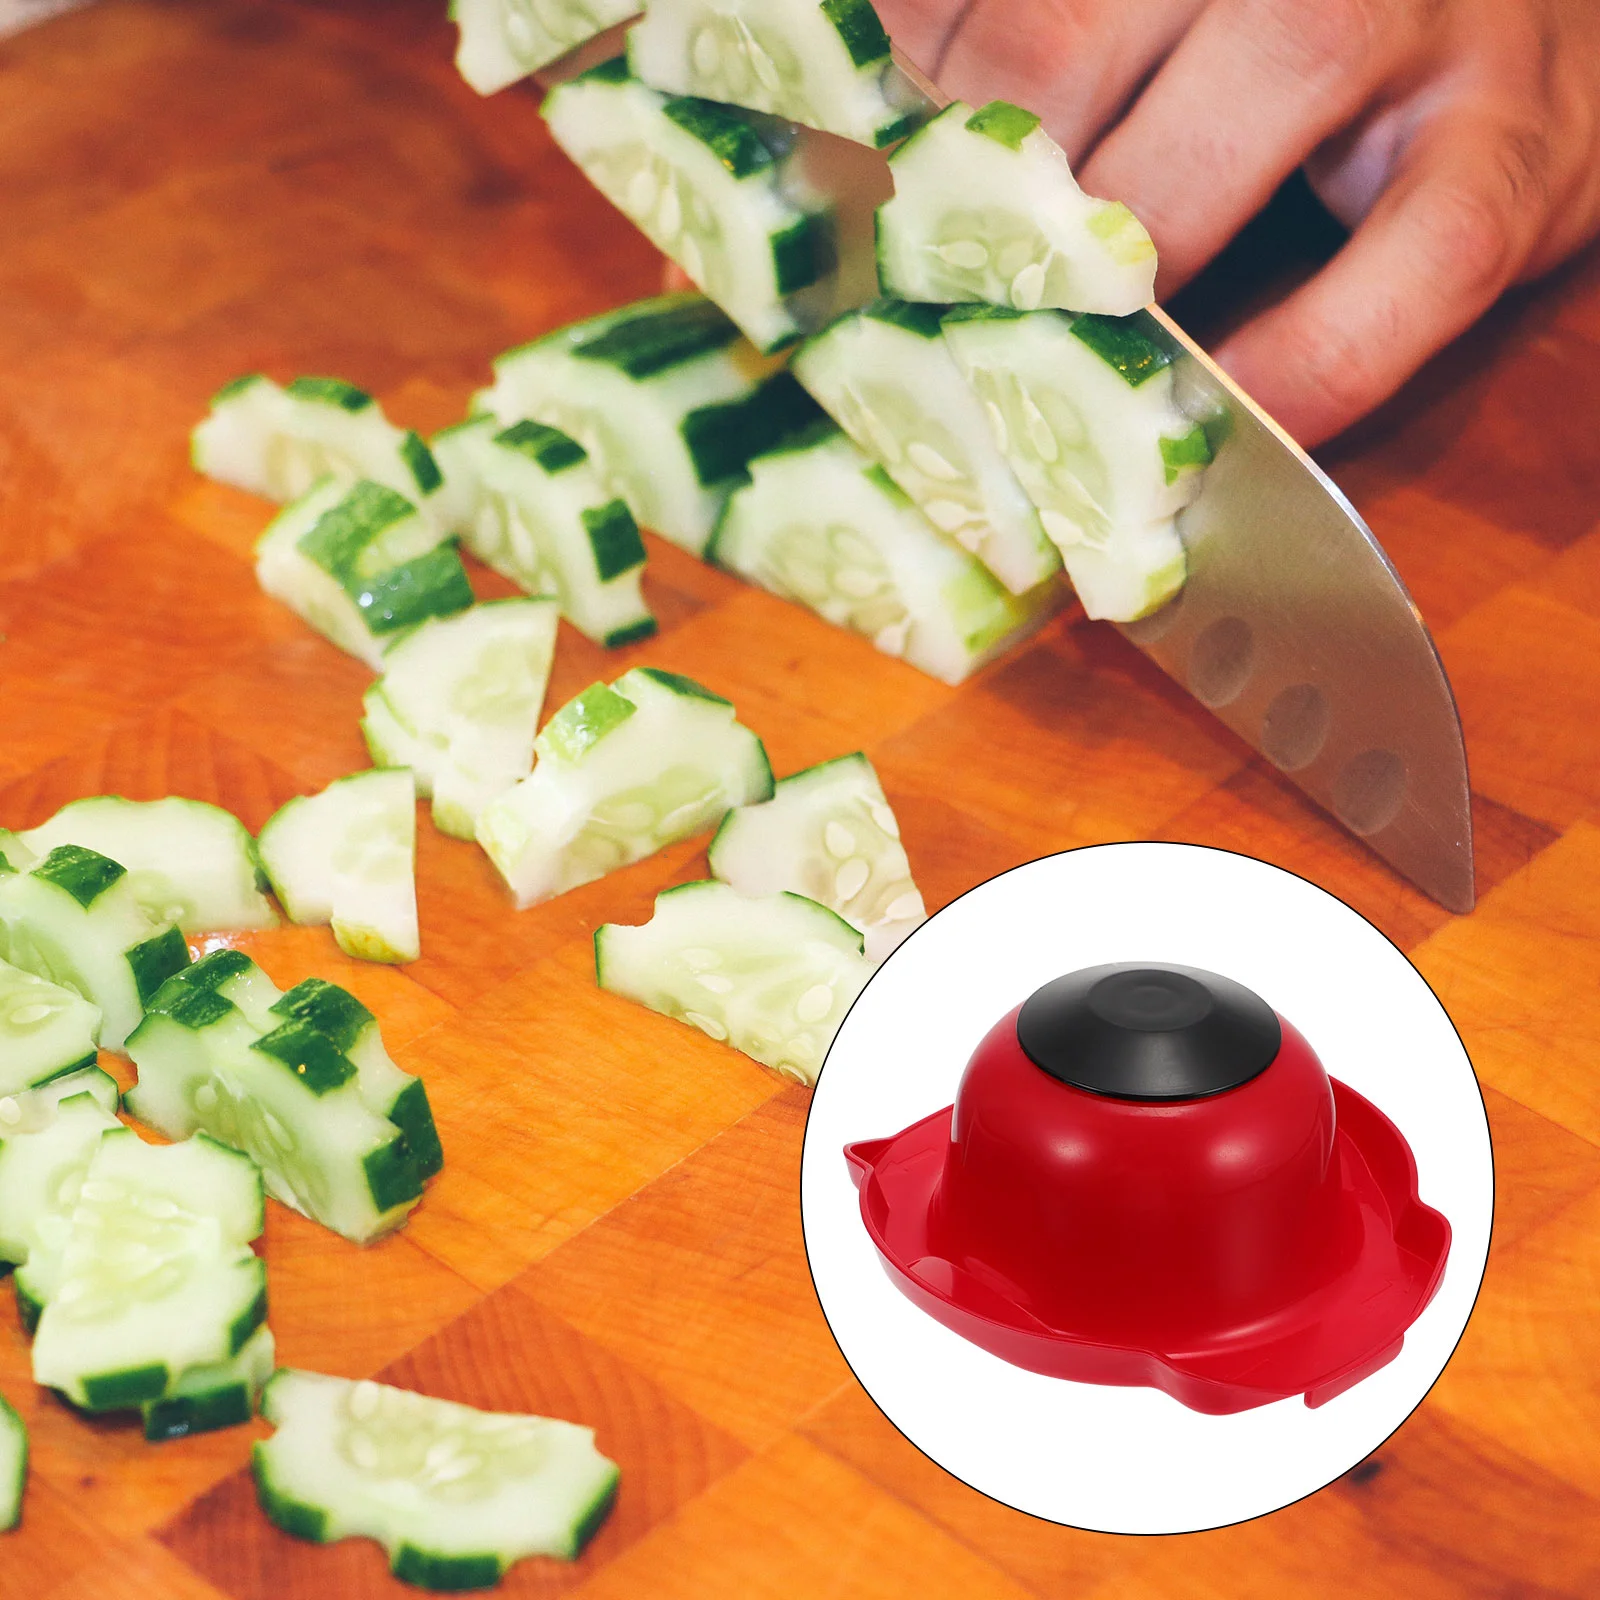 

Finger Holder Slicer Protector Safety Guard Cutting Hand Grater Vegetable Slicing Guards Kitchen Potato Mandoline Onion